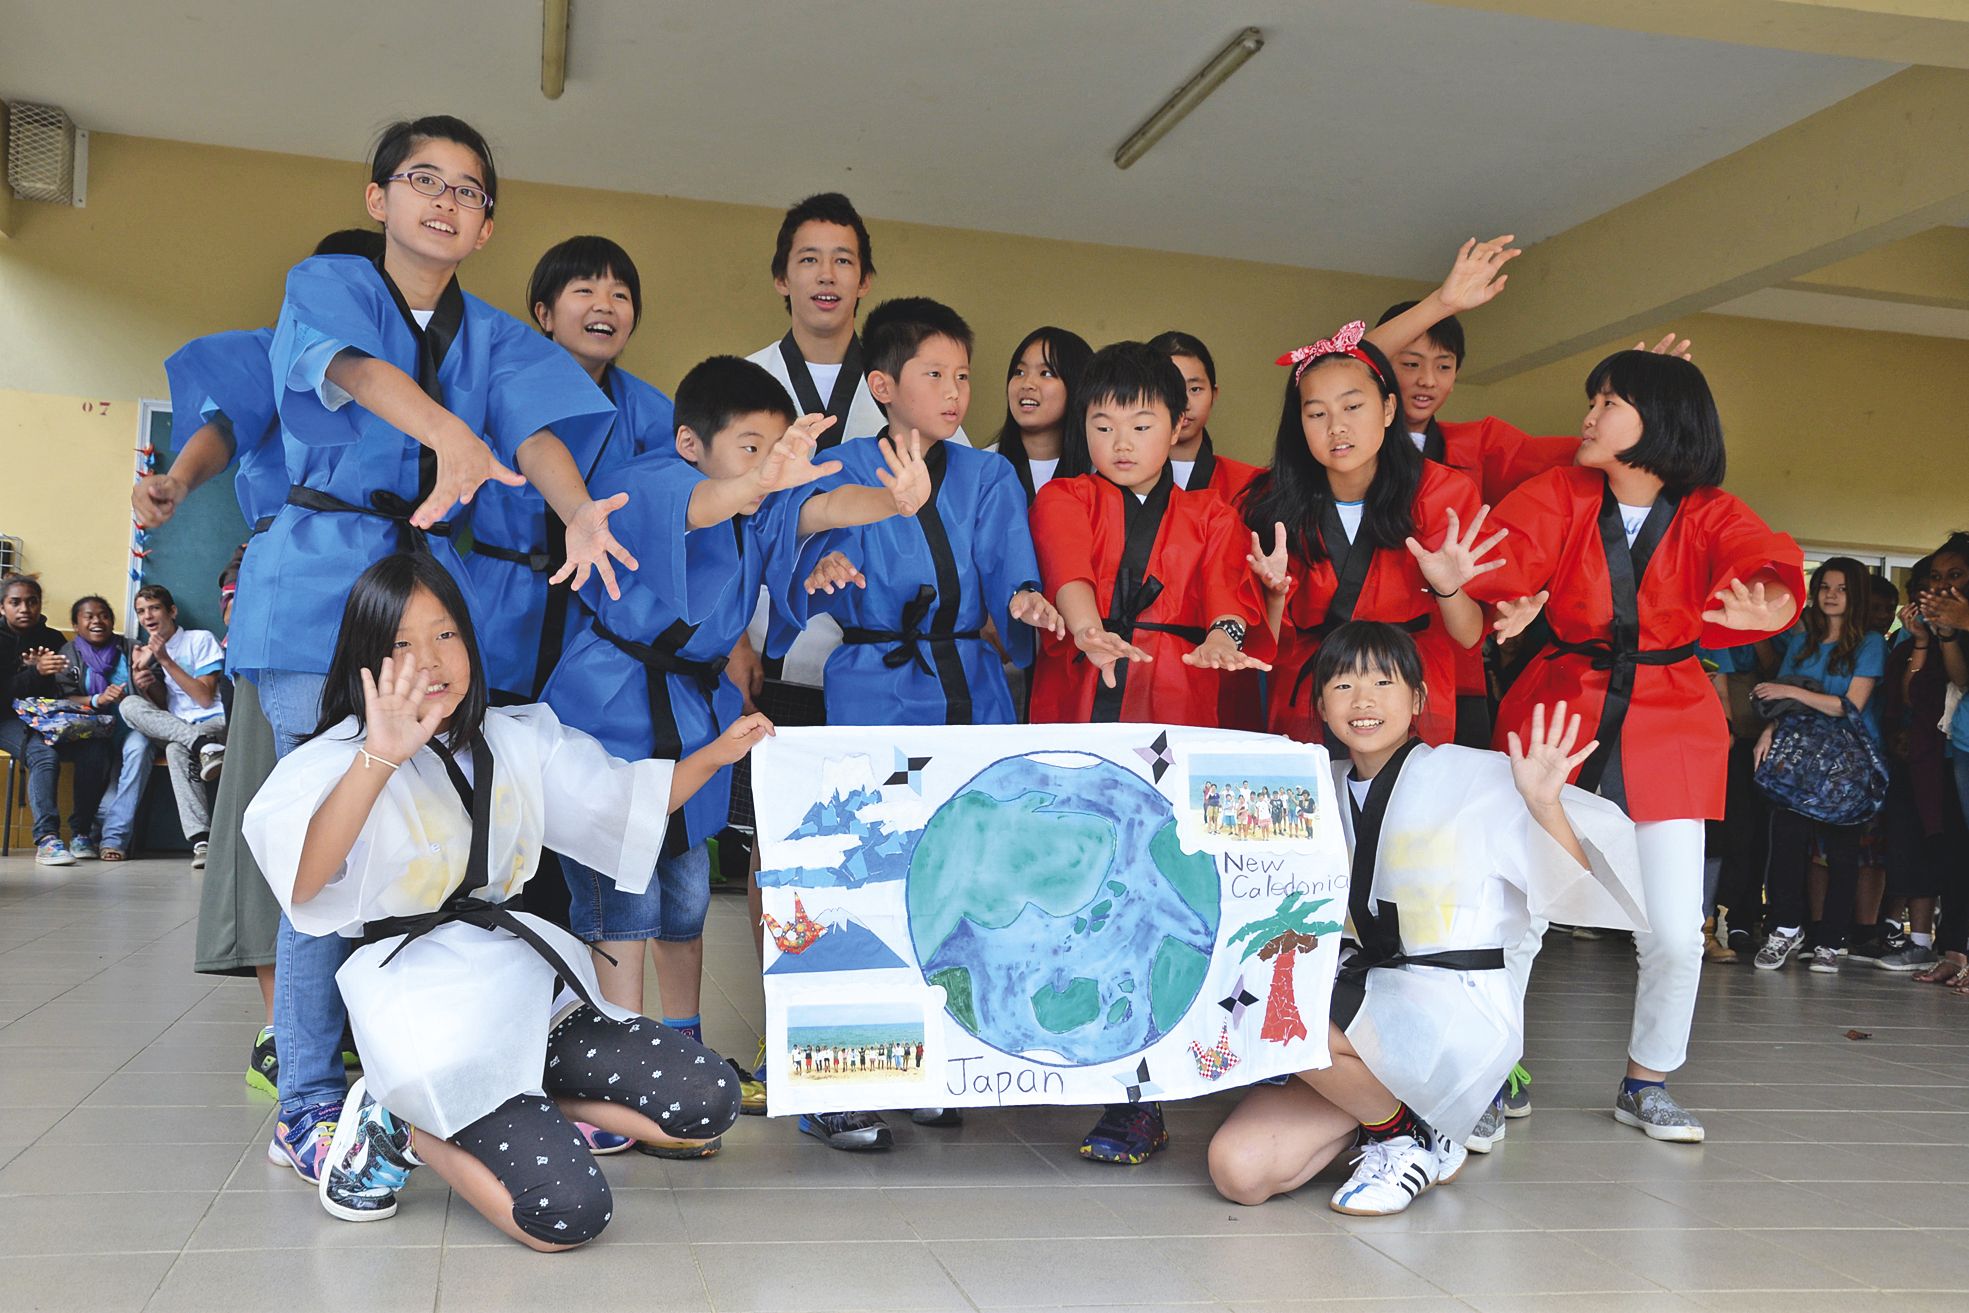 Les 14 élèves de Fukuoka au Japon participent à un échange interculturel avec la Nouvelle-Calédonie.